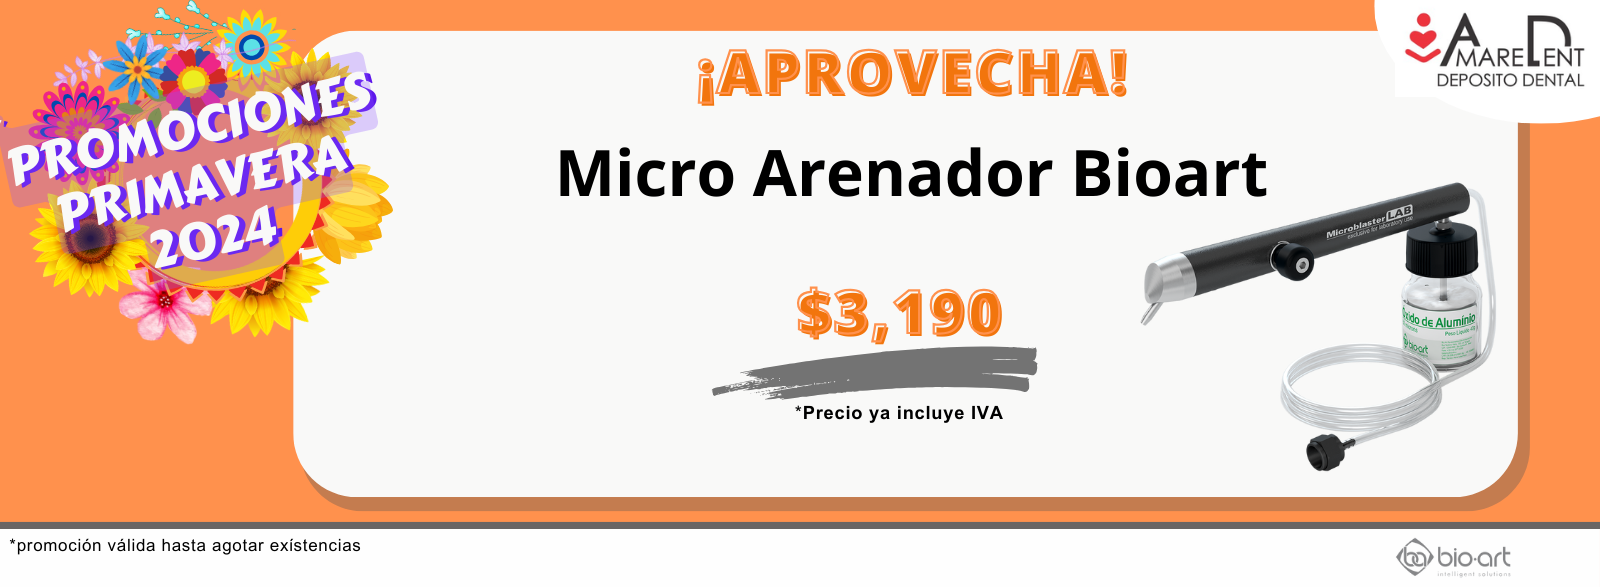 Micro Arenador Bio-Art